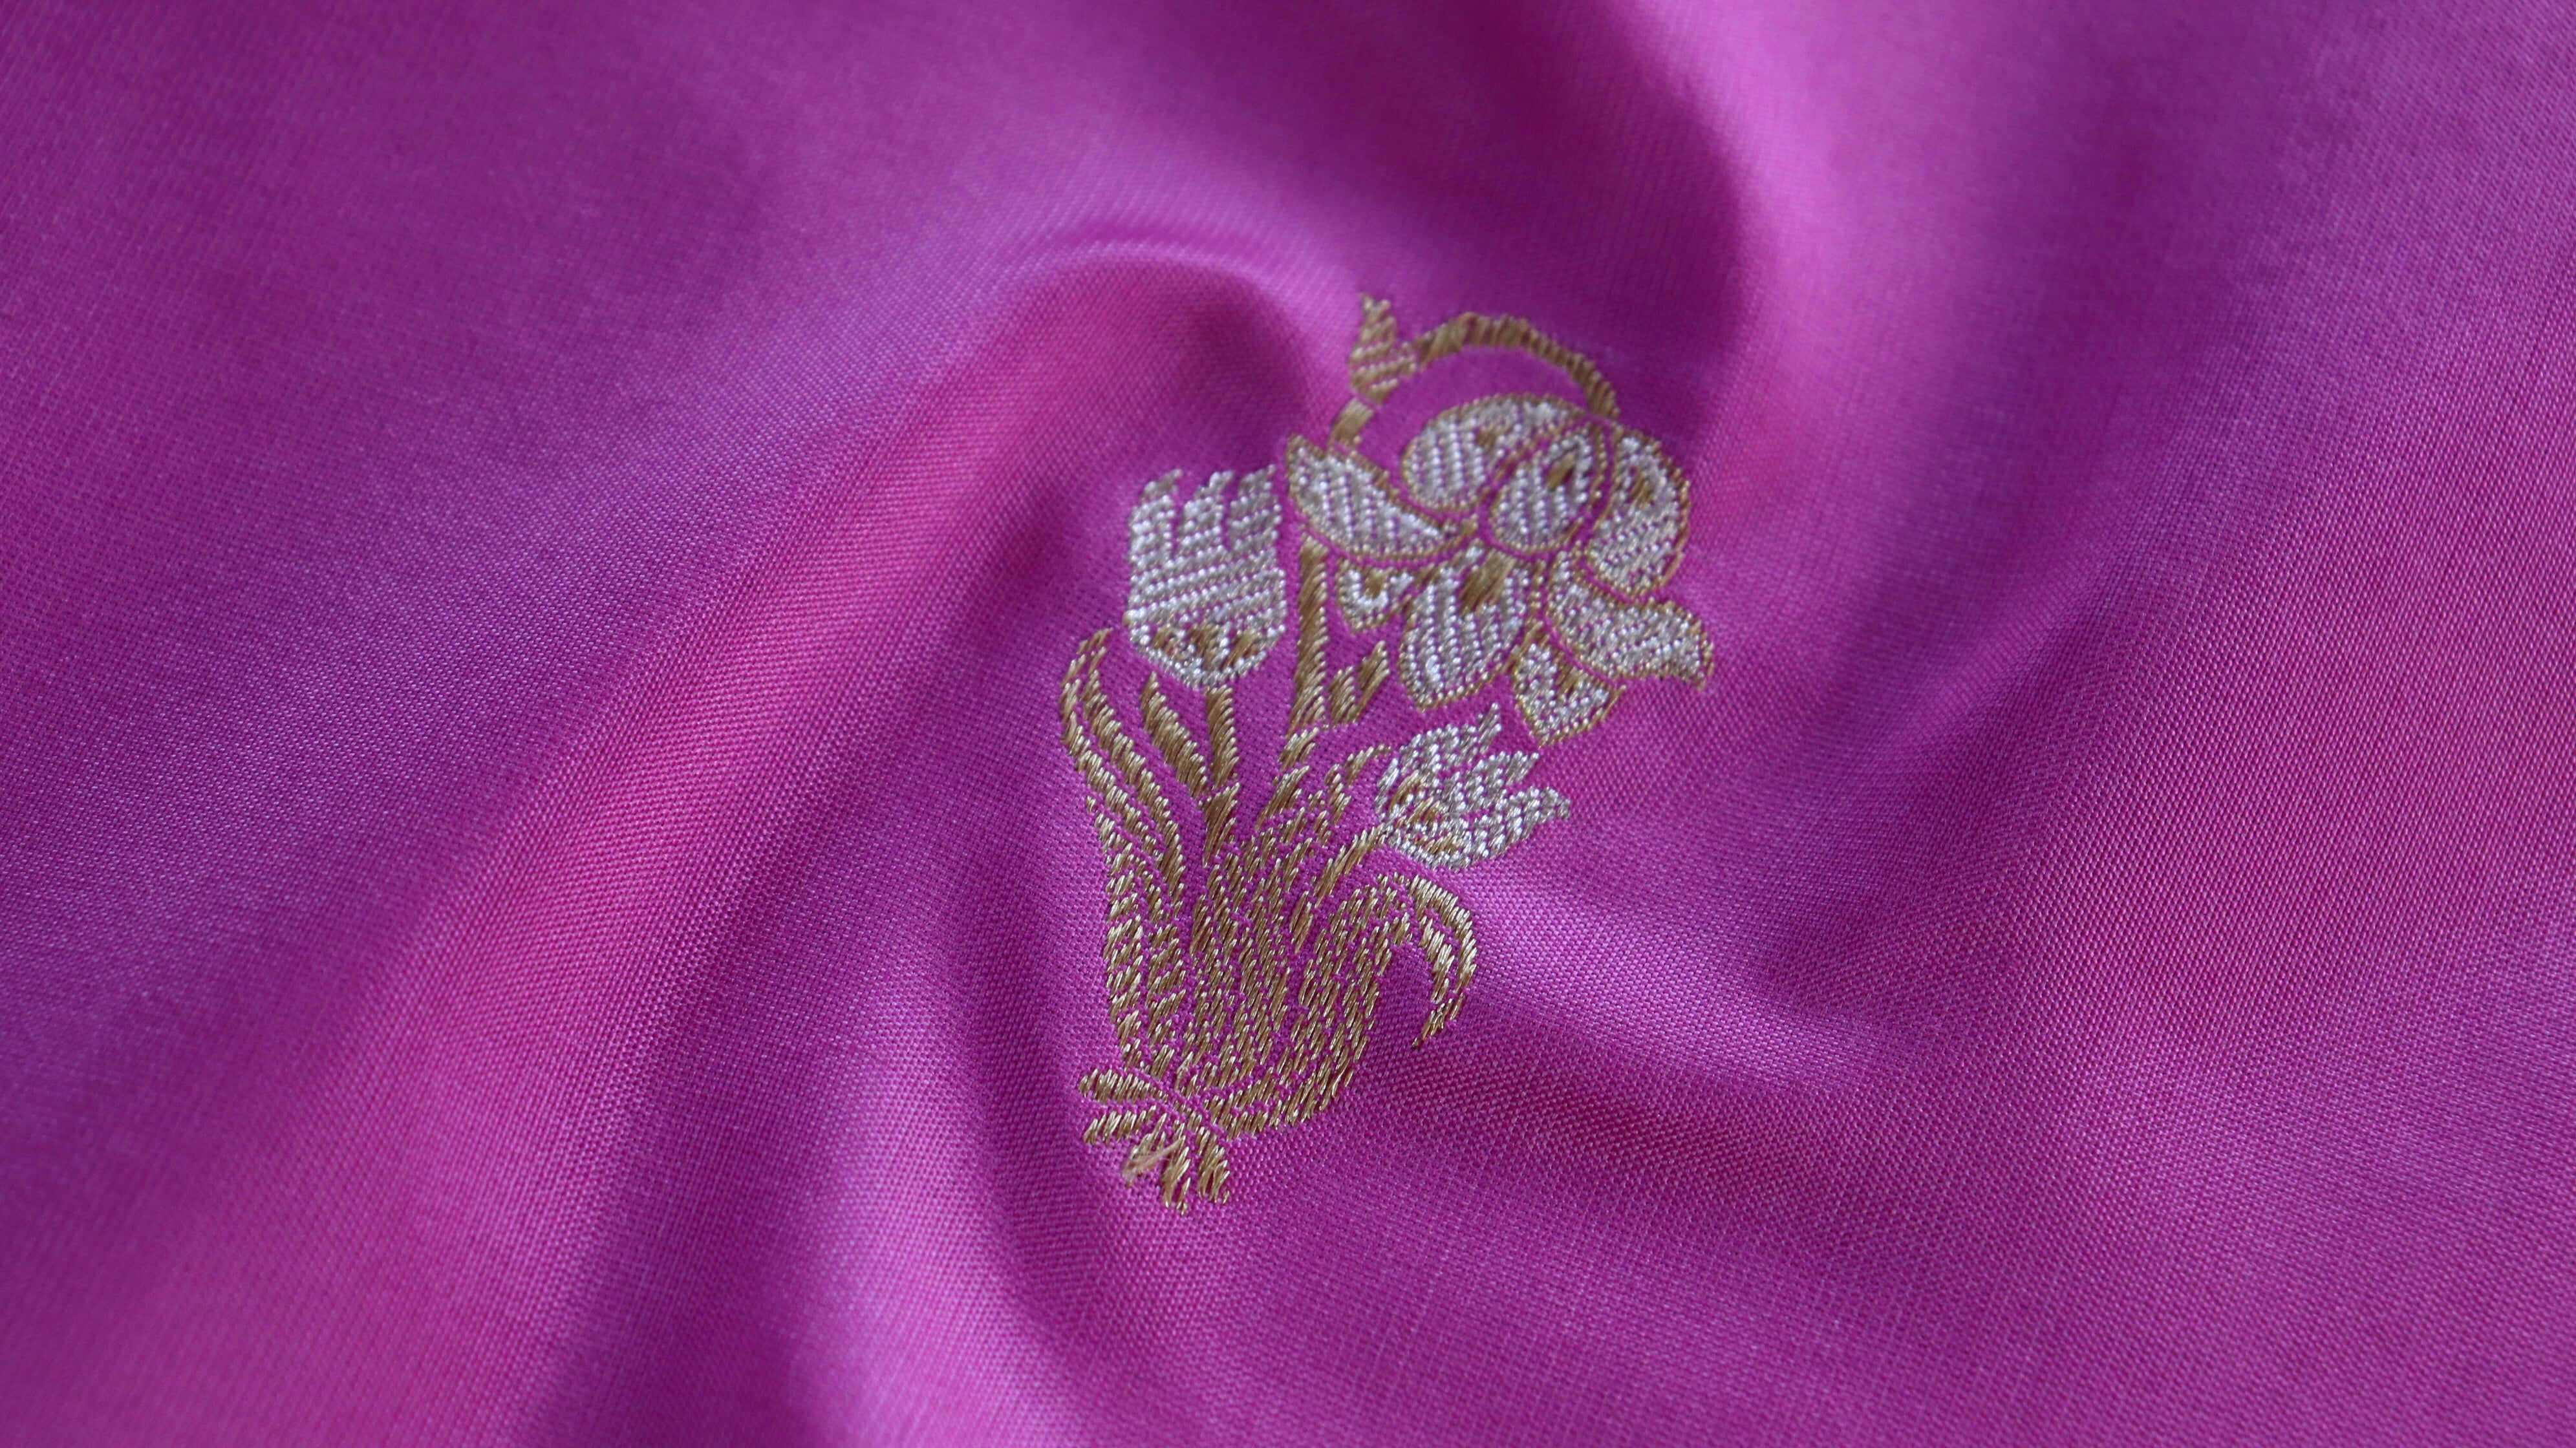 Handloom, Banarasi Handloom Saree, Alfi Saree, Tilfi Saree, Tilfi Saree Banaras, Tilfi, Banarasi Bunkar, Banarasi Bridal Wear, BridalWear, Banarasi Handloom Banarasi Pink Nargis Motif Pure Silk Handloom Banarasi Saree Banarasi Saree